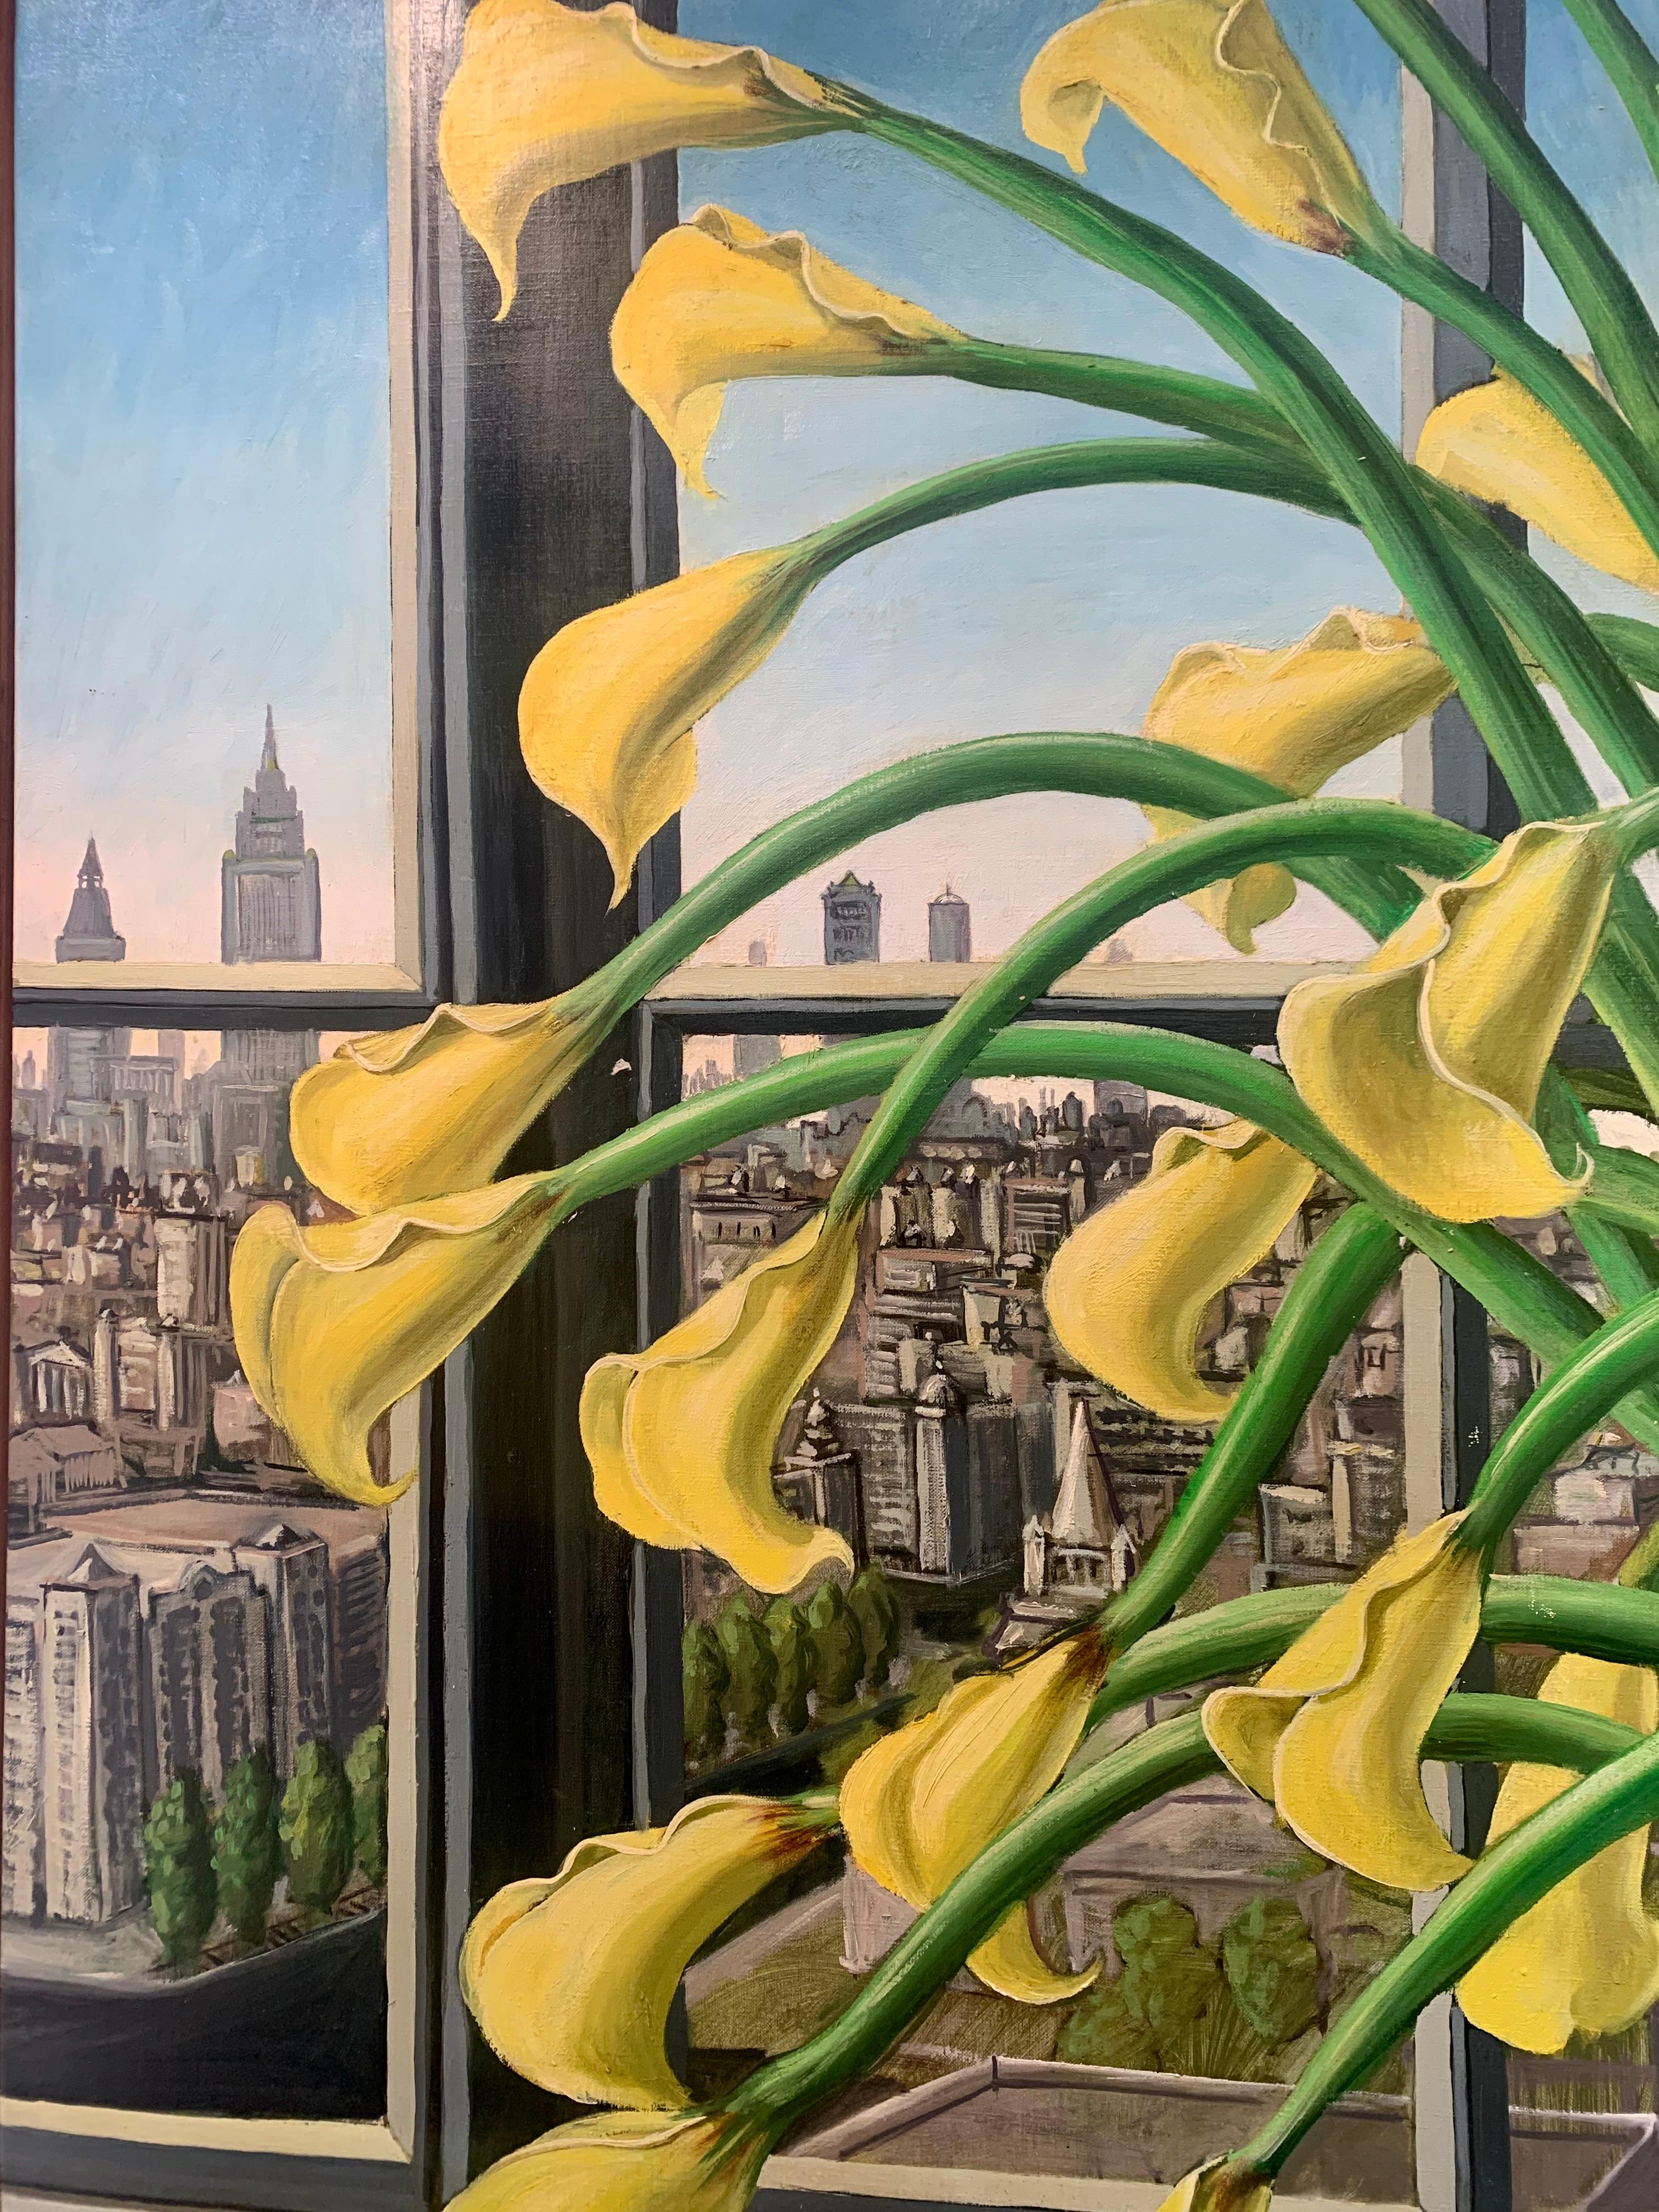  Gelbe Lilien am Fenster New York 
Aus dem Studio des Künstlers in Chelsea, New York.
Rafael Saldarriaga wurde 1955 in Medellin, Kolumbien, geboren. Er kam 1993 in die Vereinigten Staaten. Nachdem er in New Mexico und Hawaii gelebt hatte, ließ er